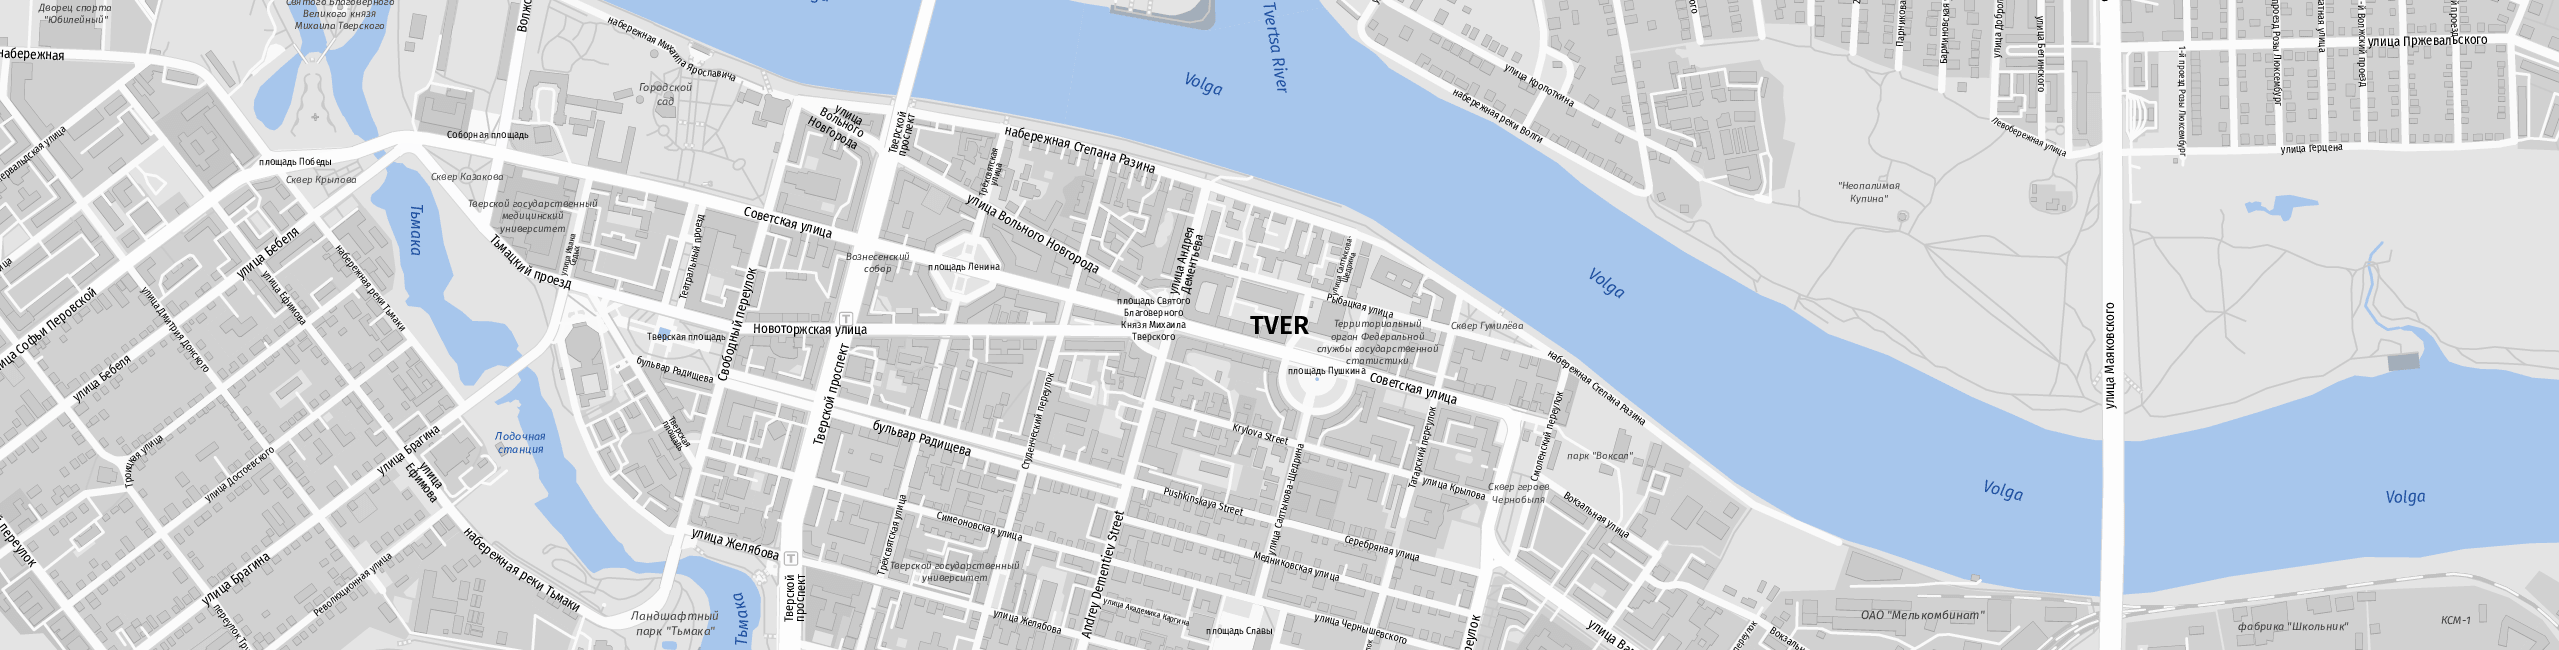 Stadtplan Tver zum Downloaden.